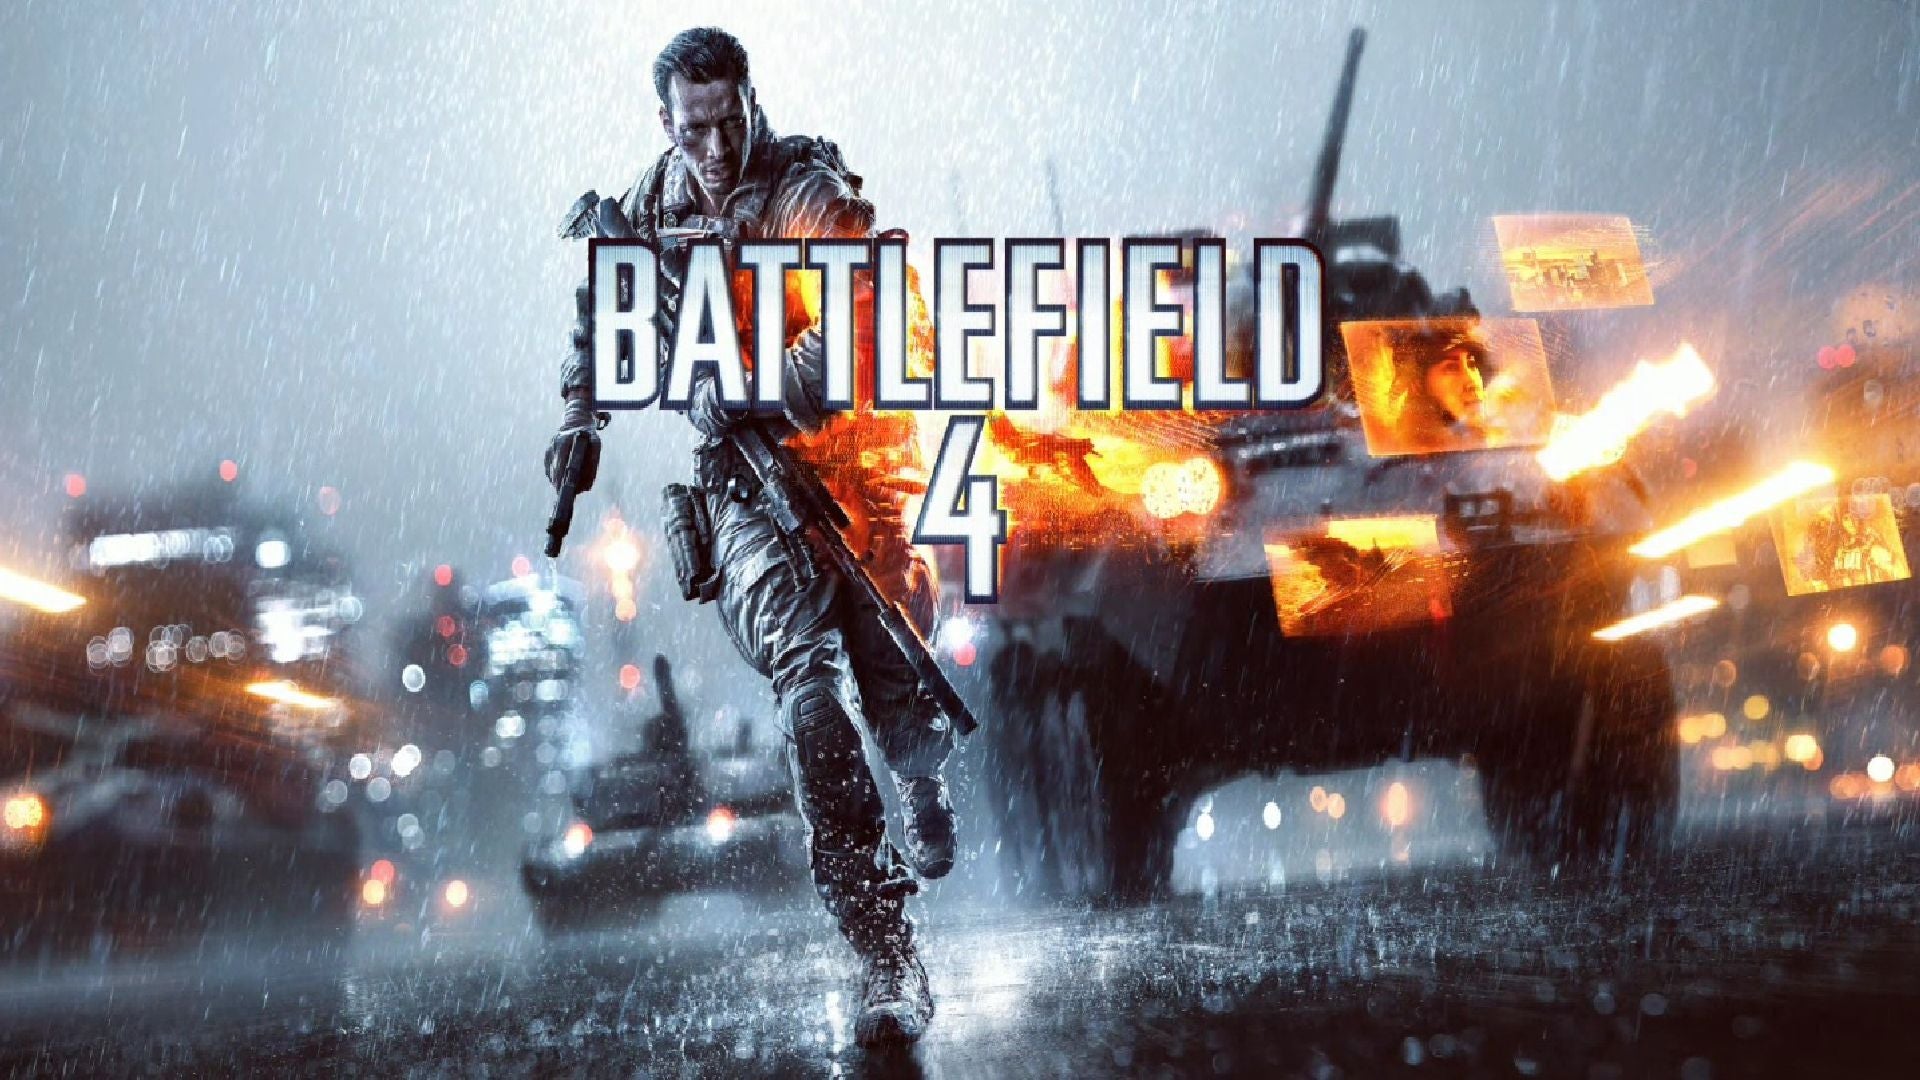 Battlefield 4 - Xbox 360 Game